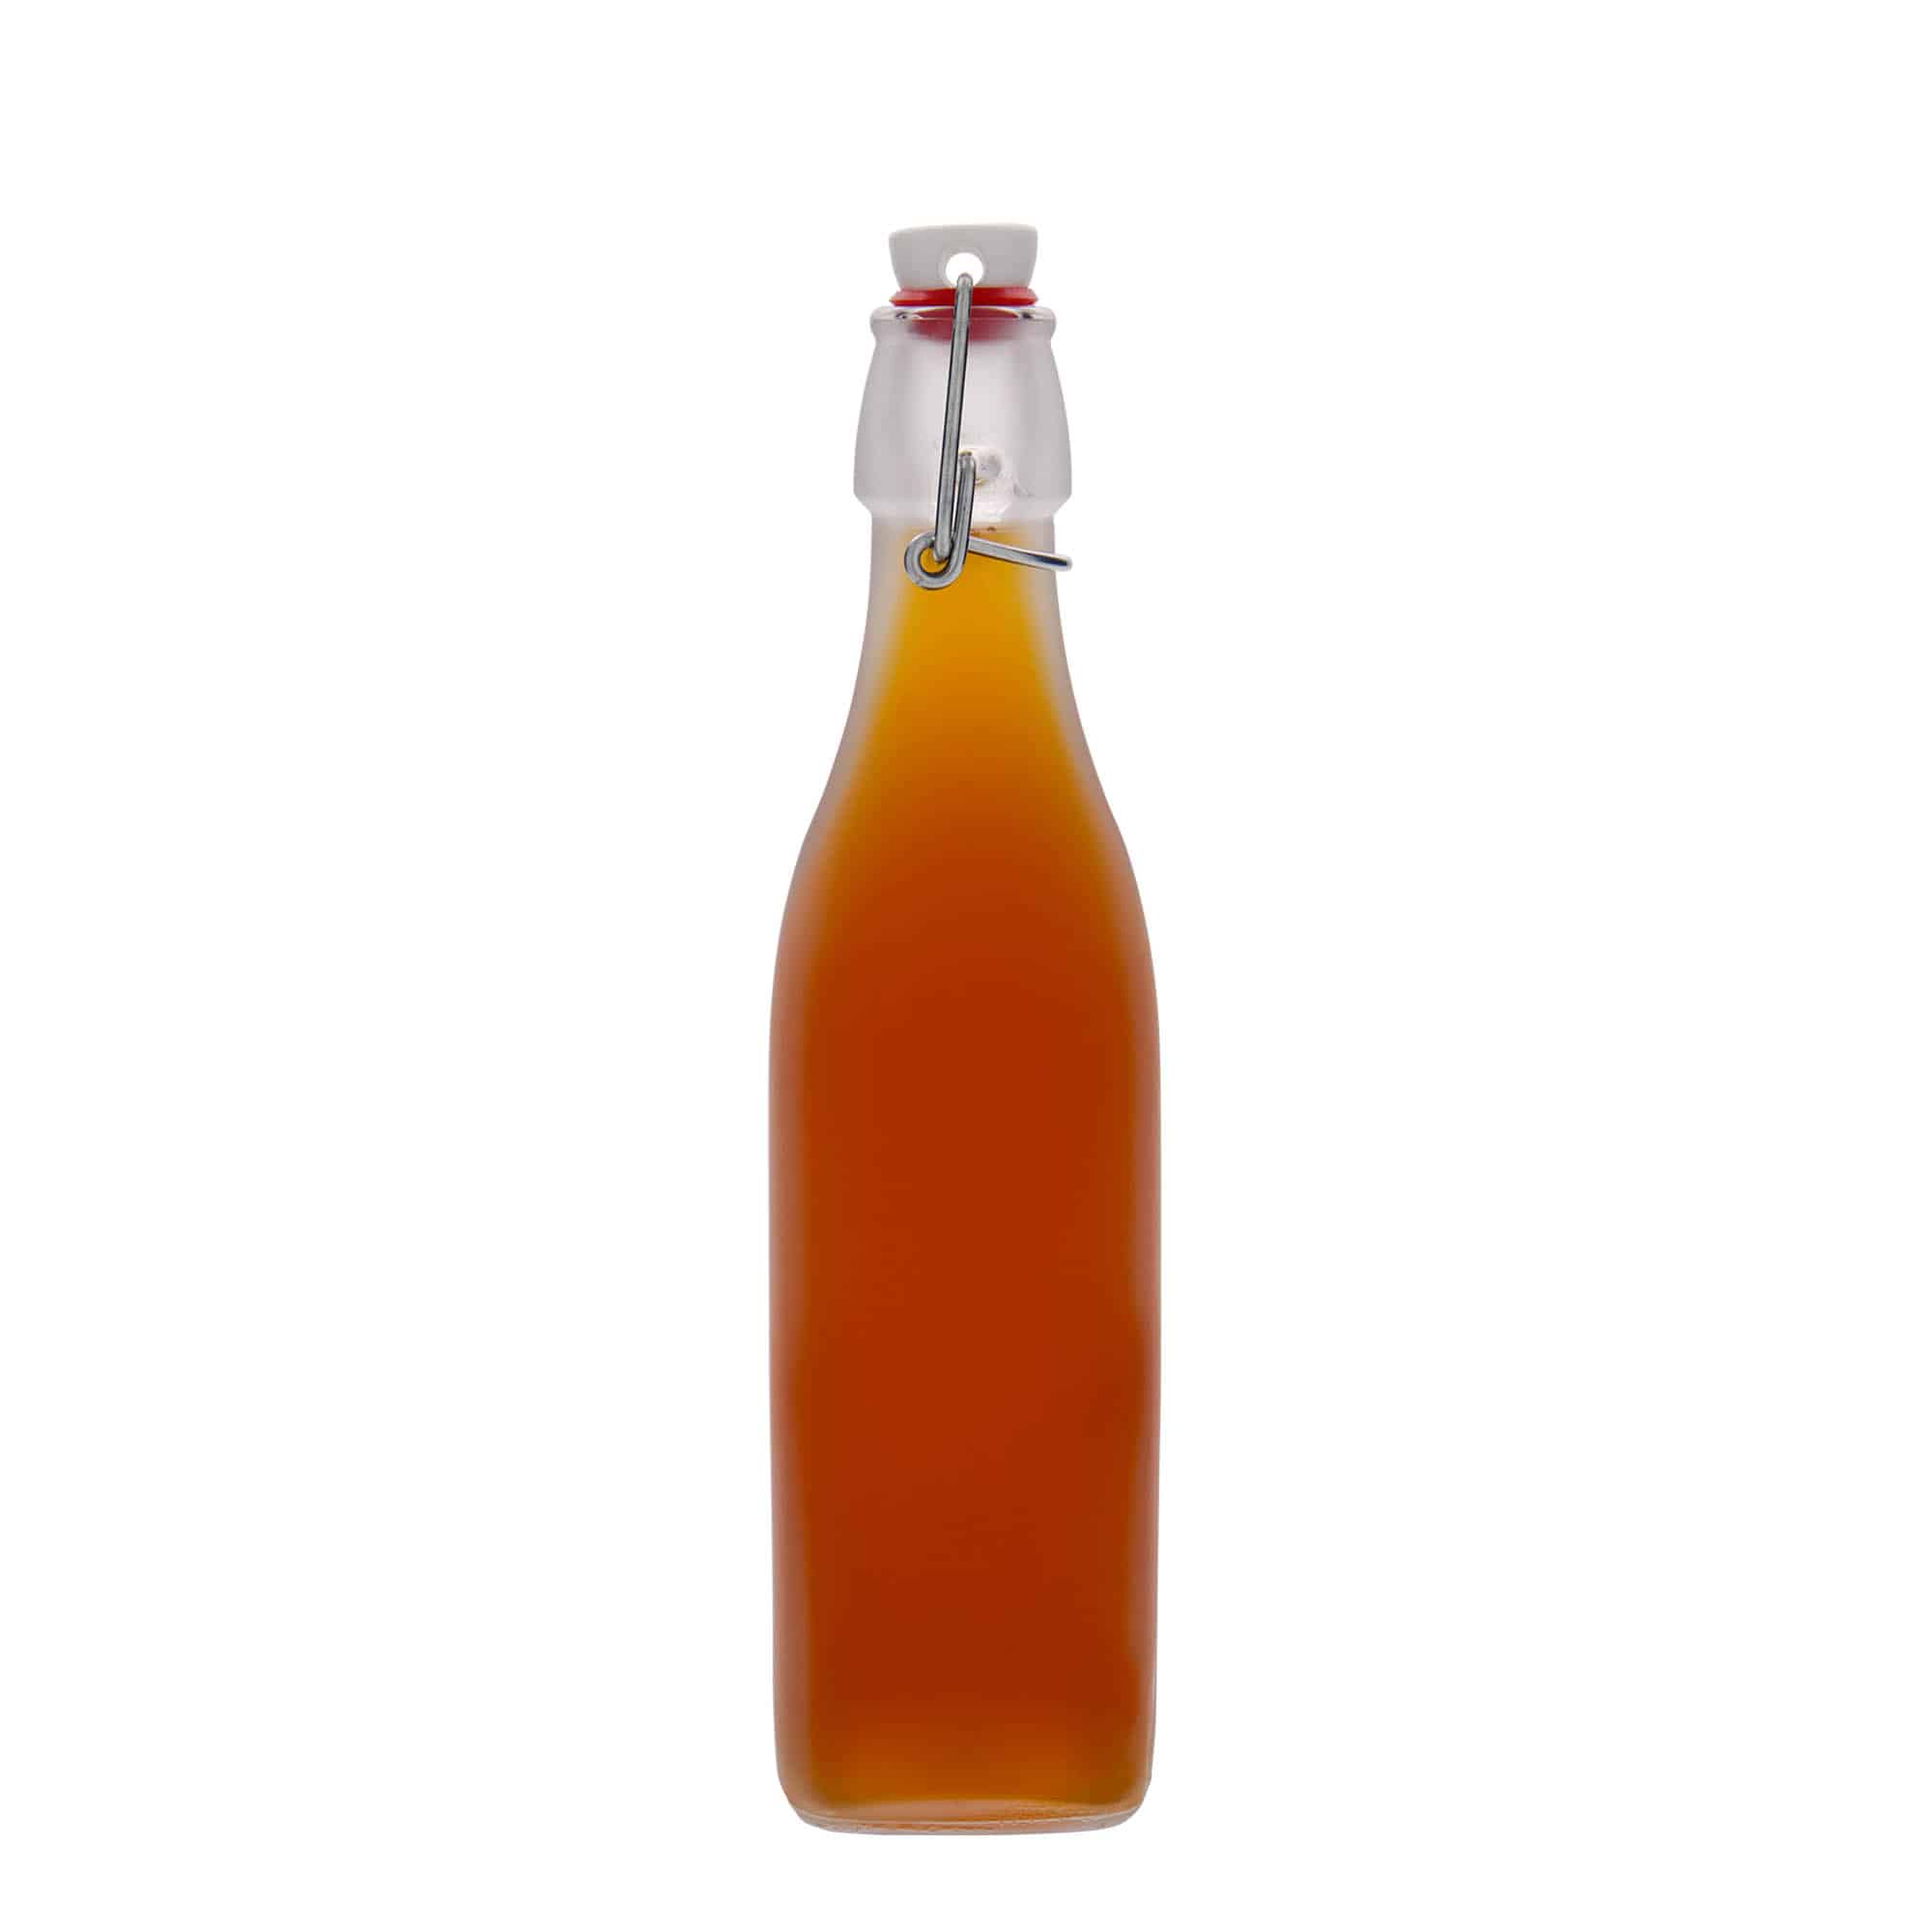 500 ml glasflaske 'Swing', kvadratisk, hvid, åbning: Patentlåg